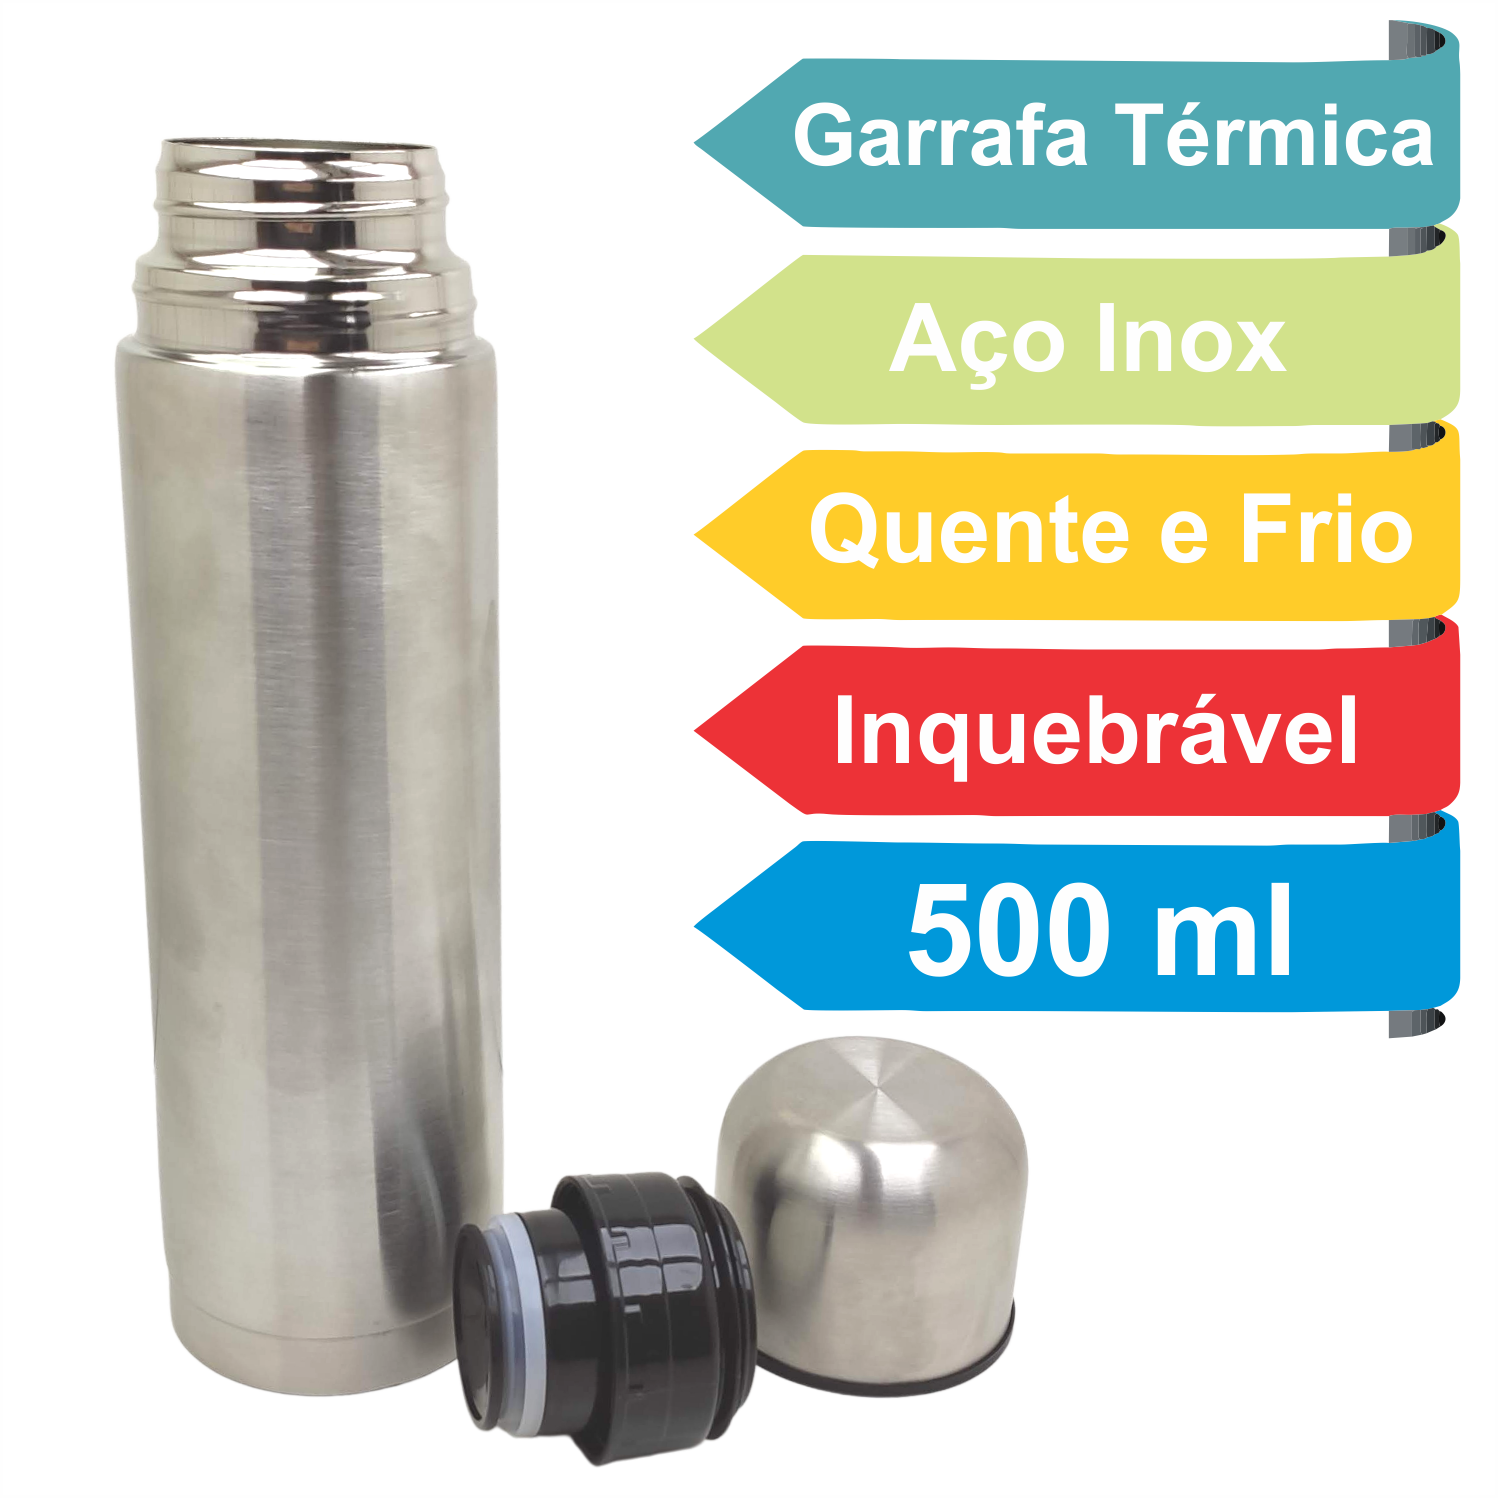 Garrafa Térmica Garrafinha Aço Inox Inquebrável 500ml Água Quente e Frio Café Resistente Academia - 2